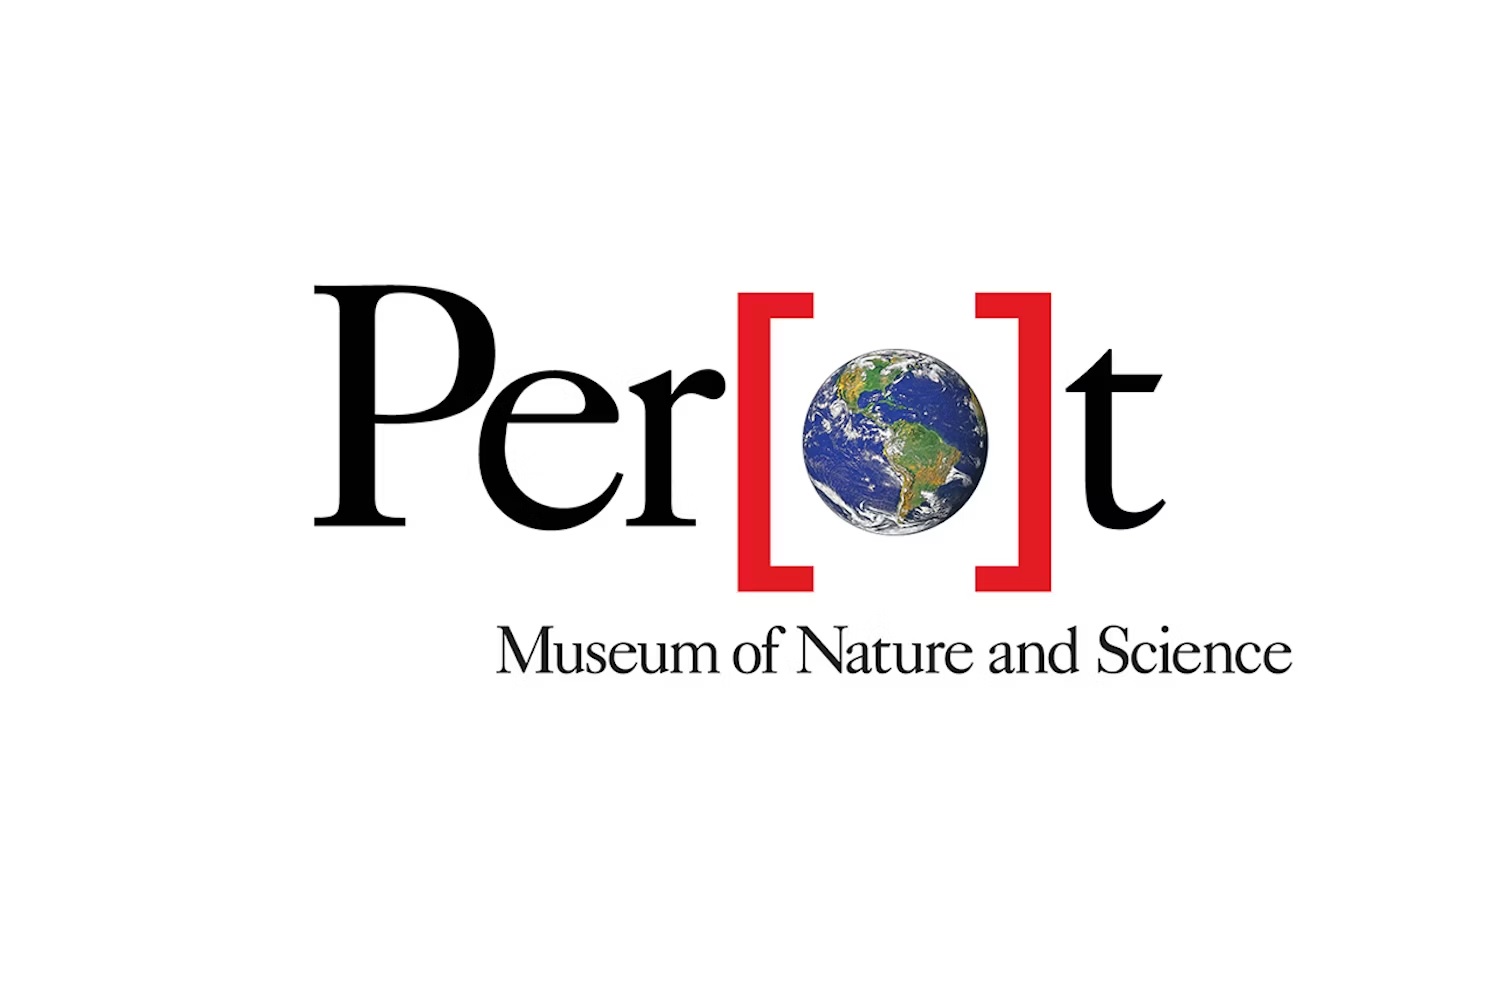 perot museum logo